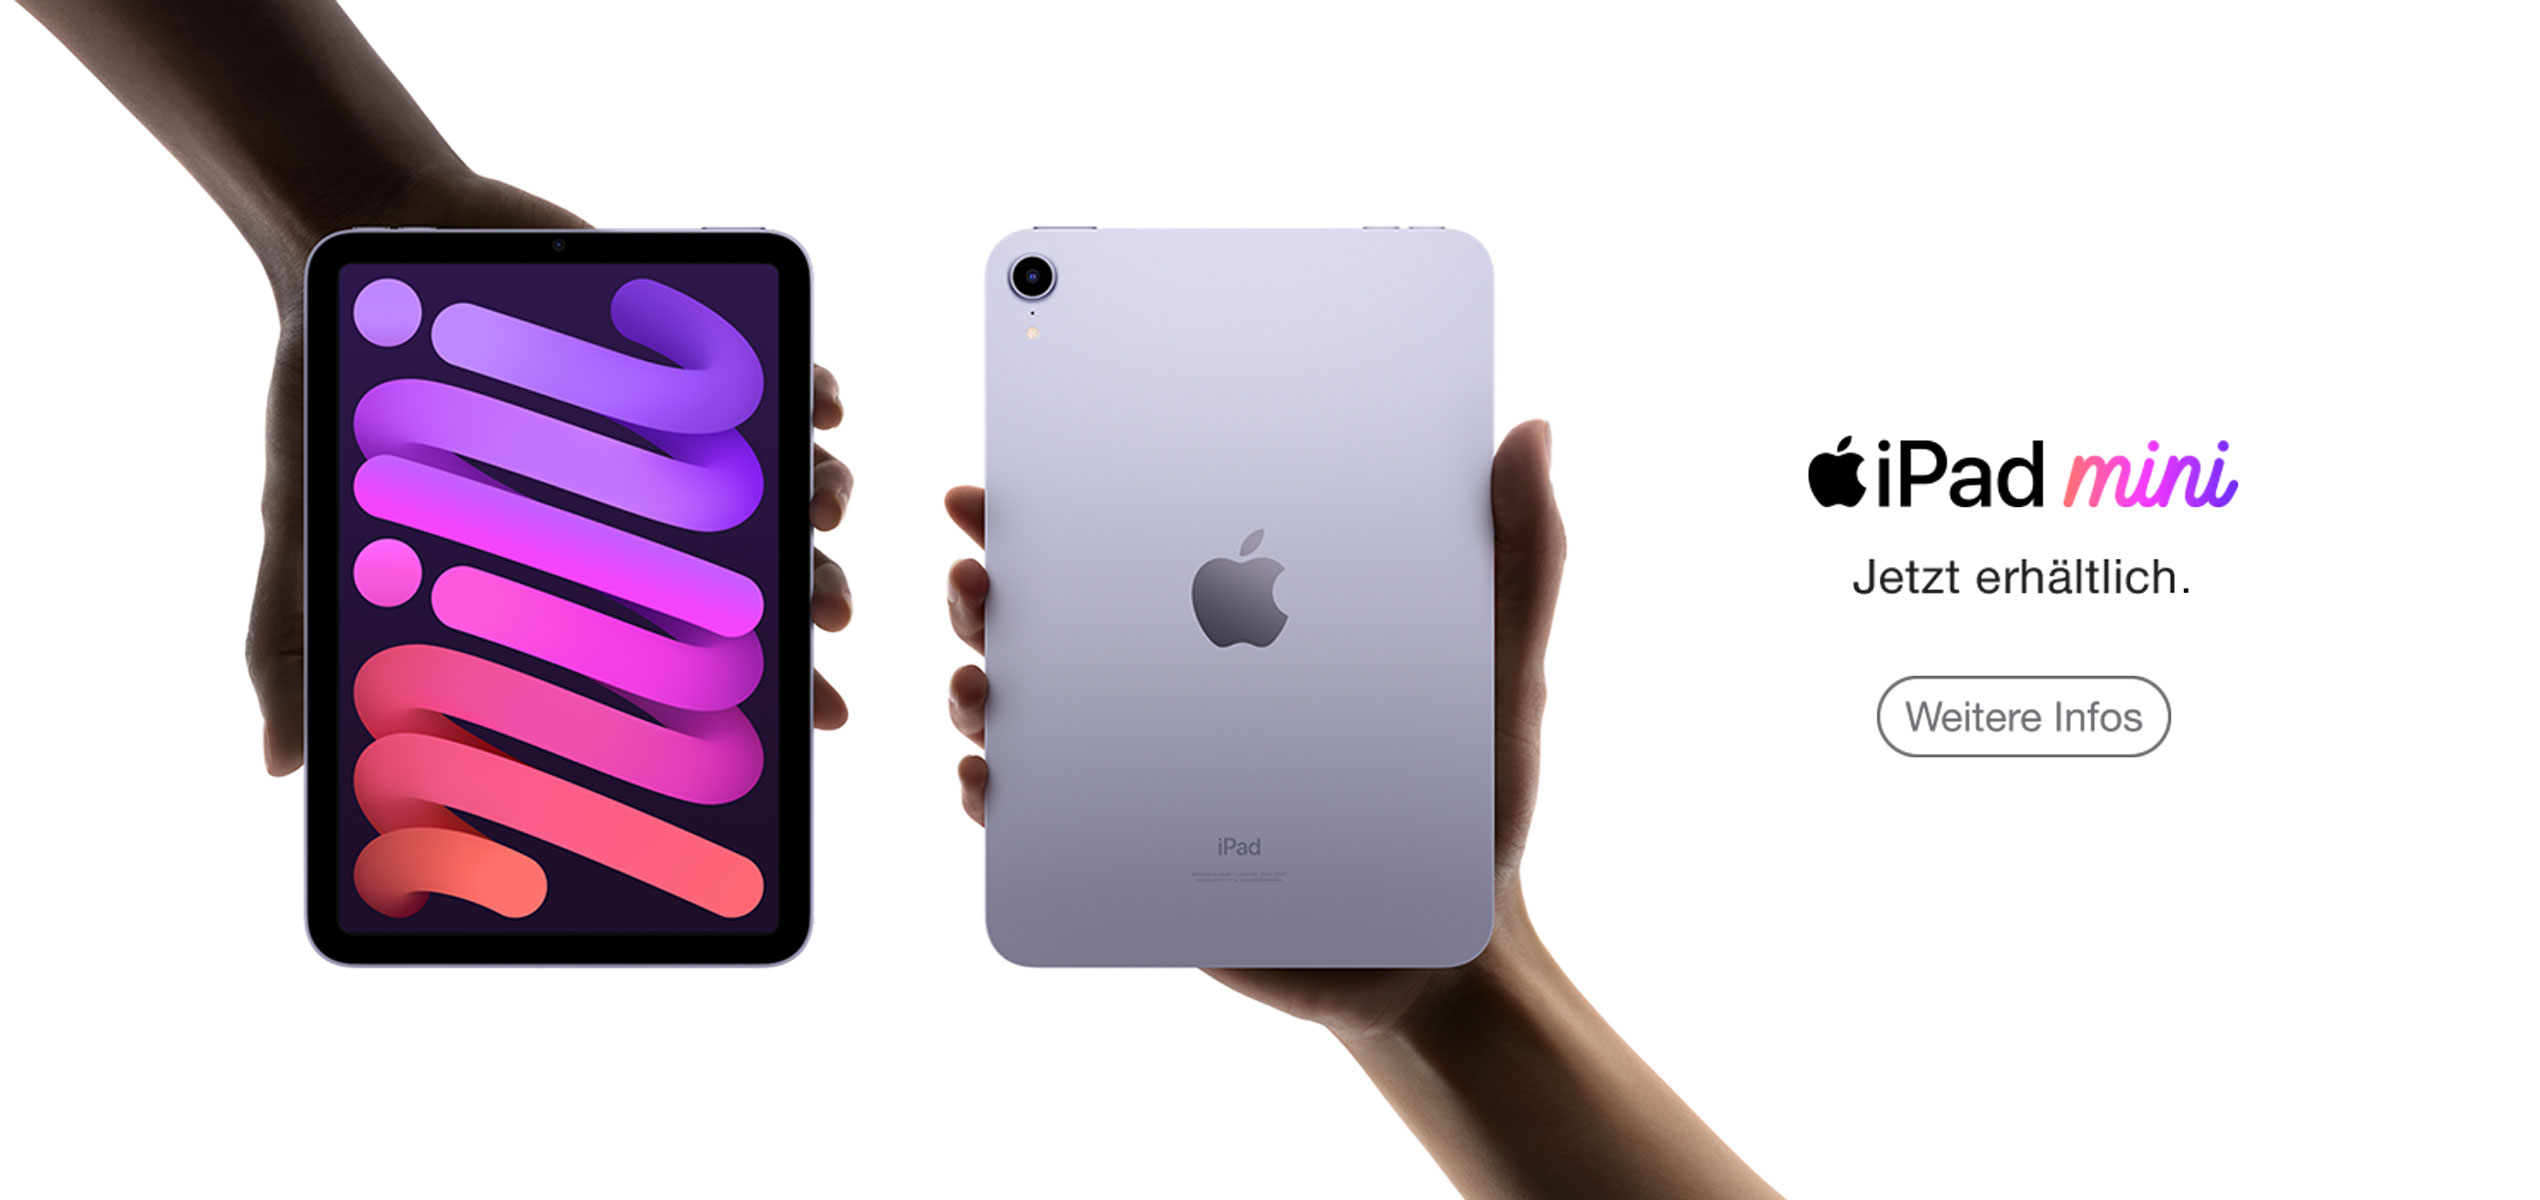 Zwei Hände halten zwei iPad mini in violett